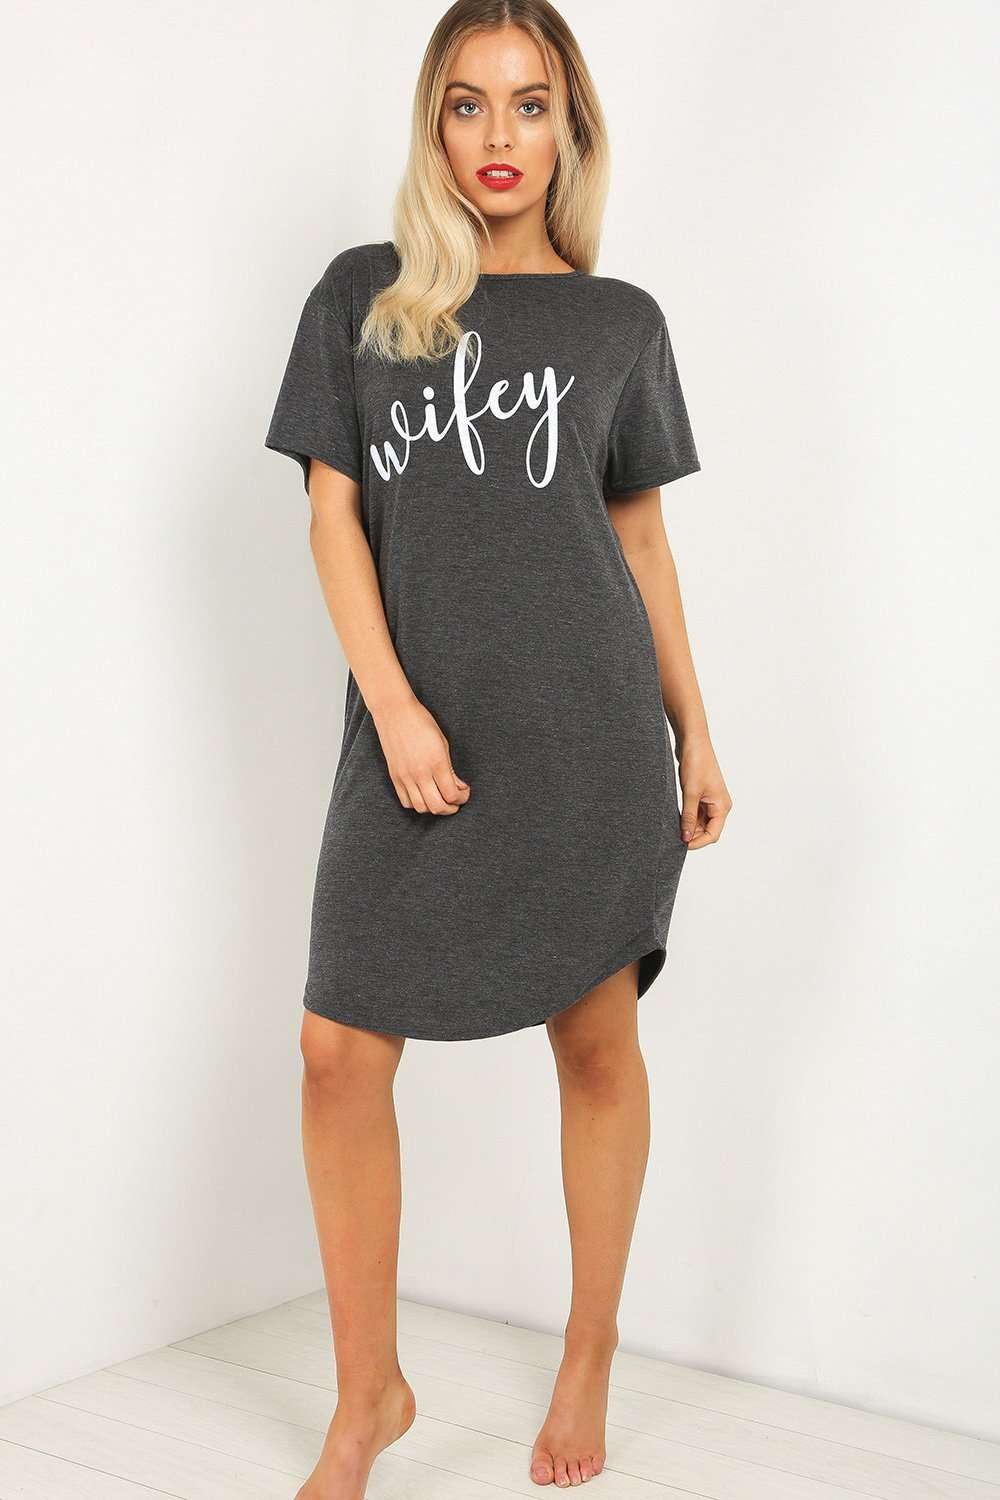 Wifey Slogan Print Oversized Pyjama Dress - bejealous-com